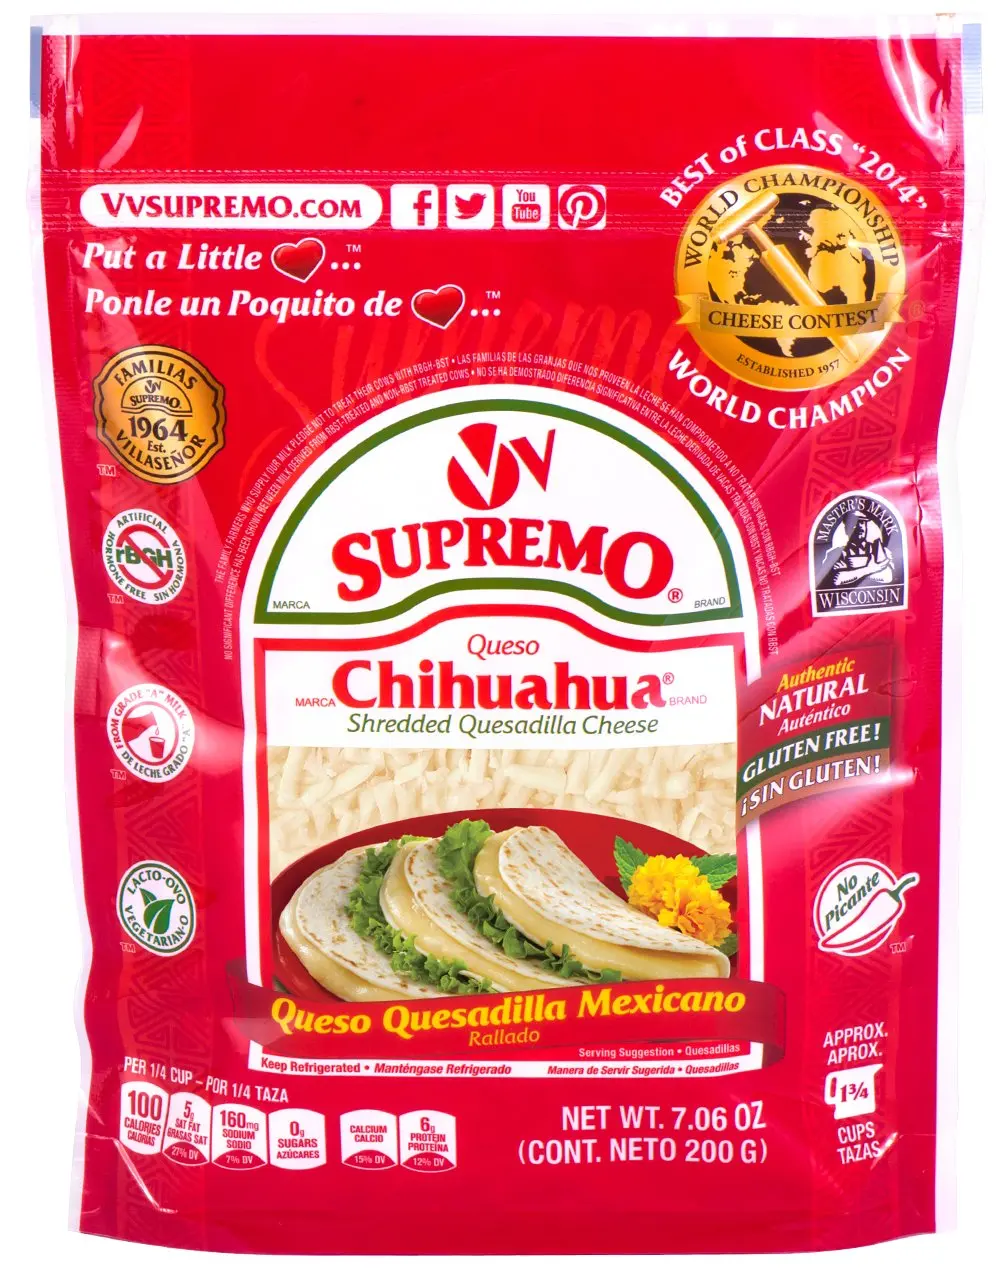 Buy V&V Supremo Queso Chihuahua Mexican Style Quesadilla